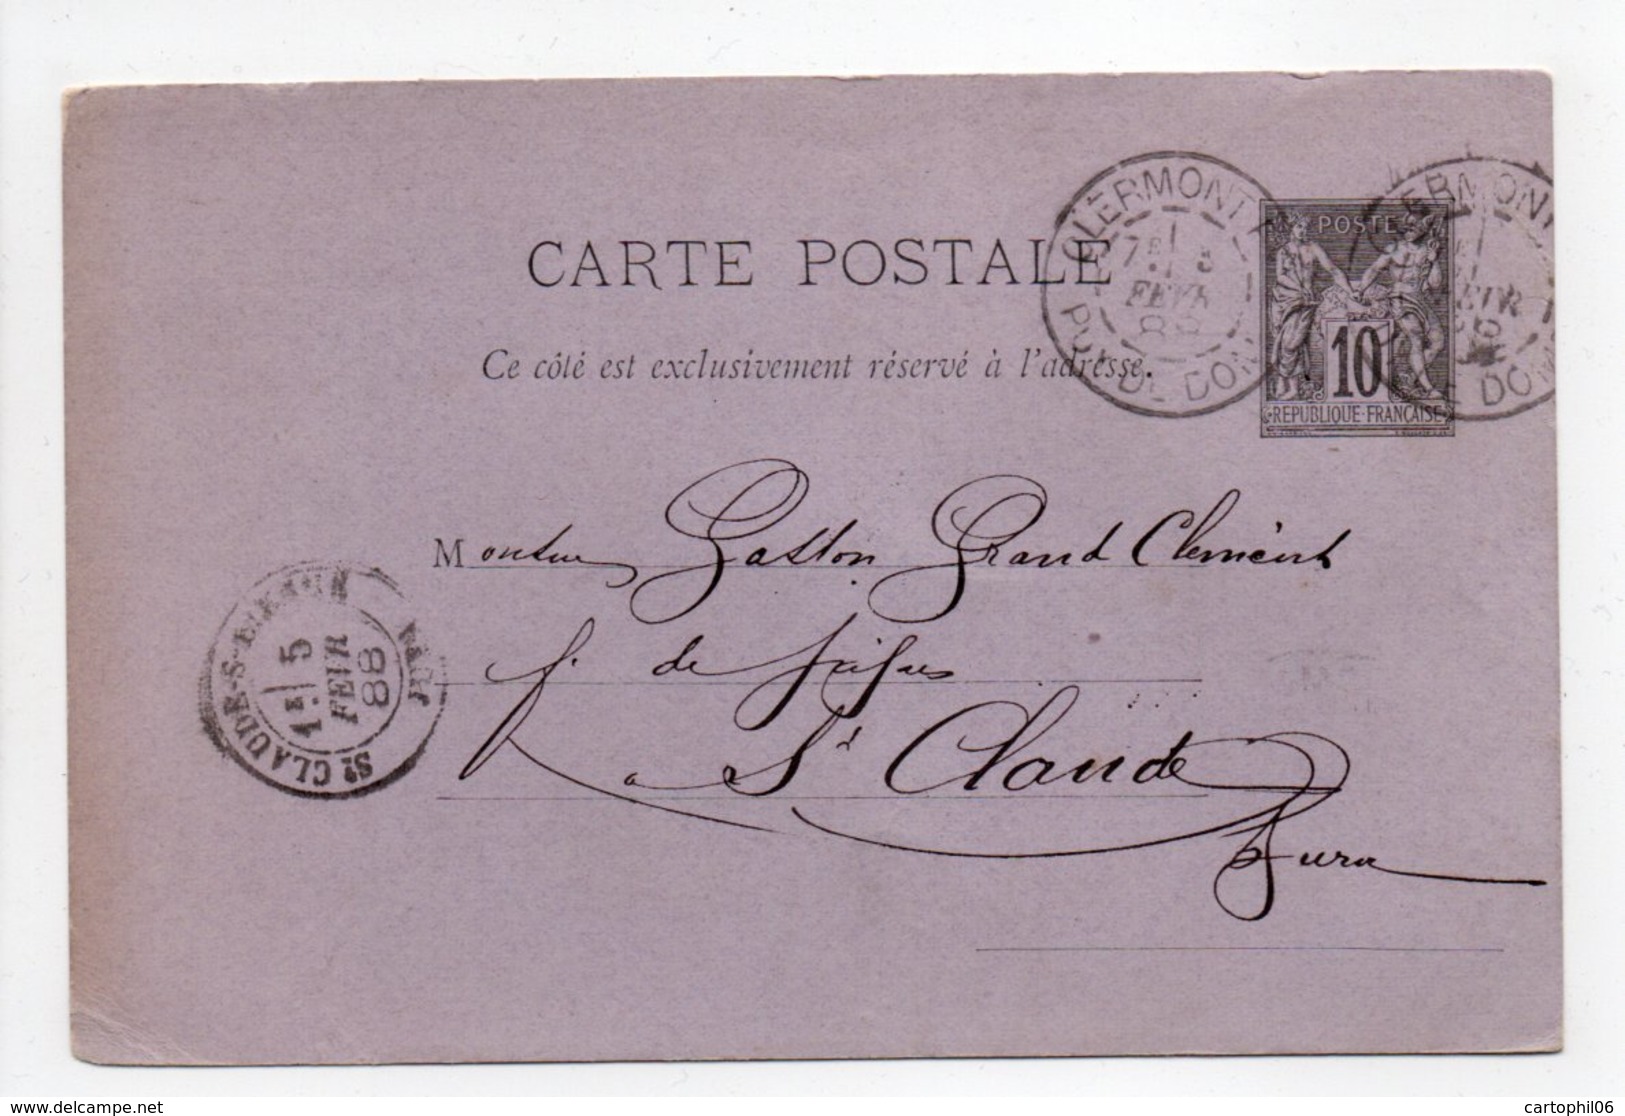 - Carte Postale FABRIQUE DE PIPES CHOLET, CLERMONT-FERRAND Pour SAINT-CLAUDE 3 FEVR 1888 - 10 C. Noir Type Sage - - Postales Tipos Y (antes De 1995)